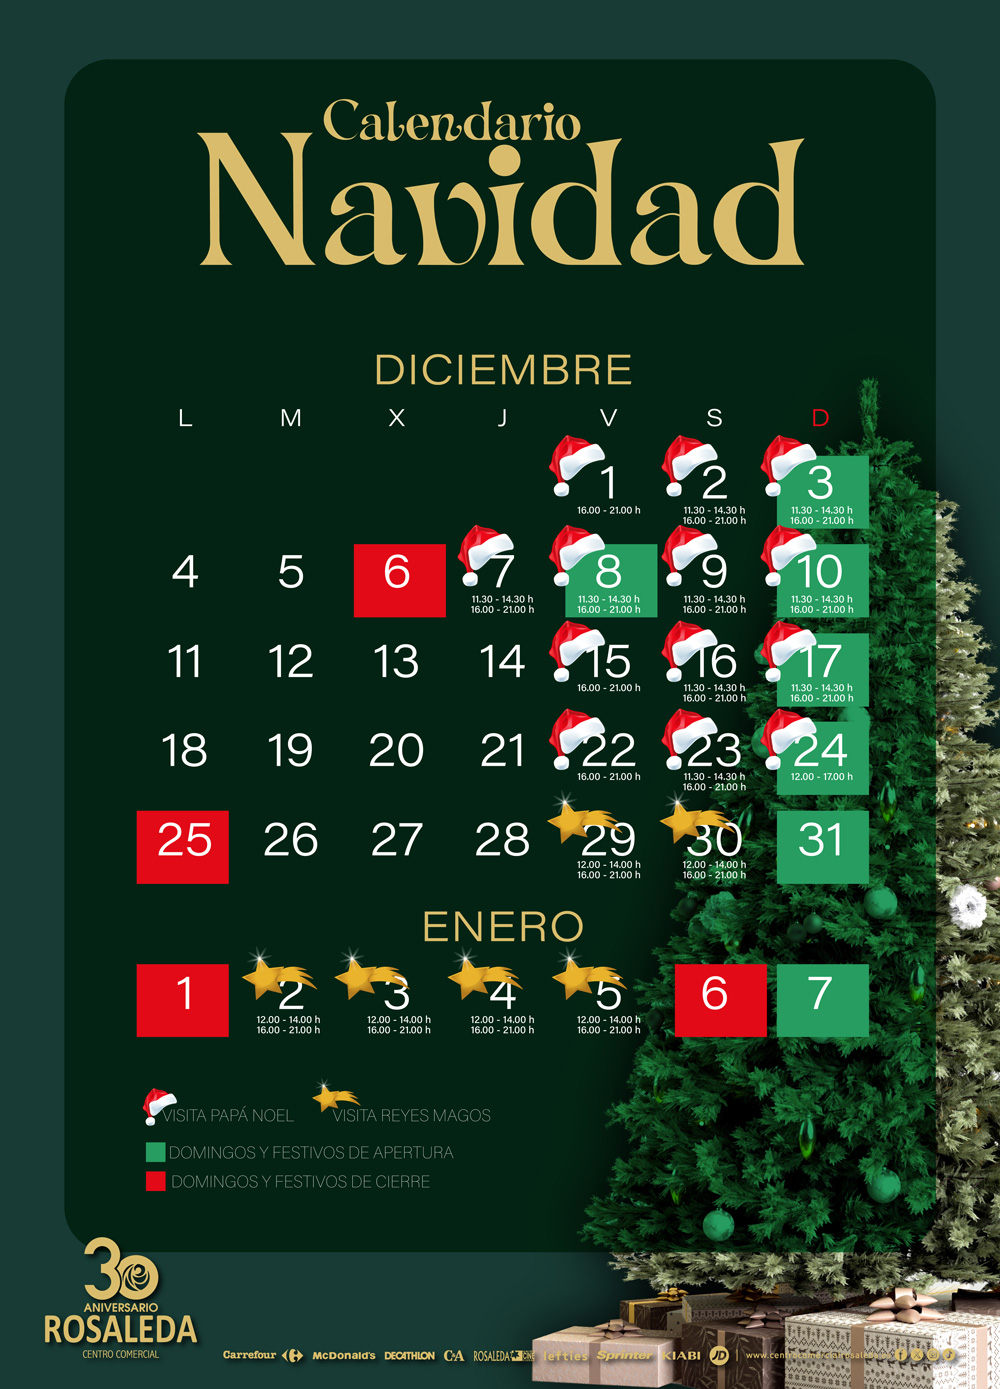 Calendario de apertura de Navidad y visitas de Papá Noel y Reyes Magos